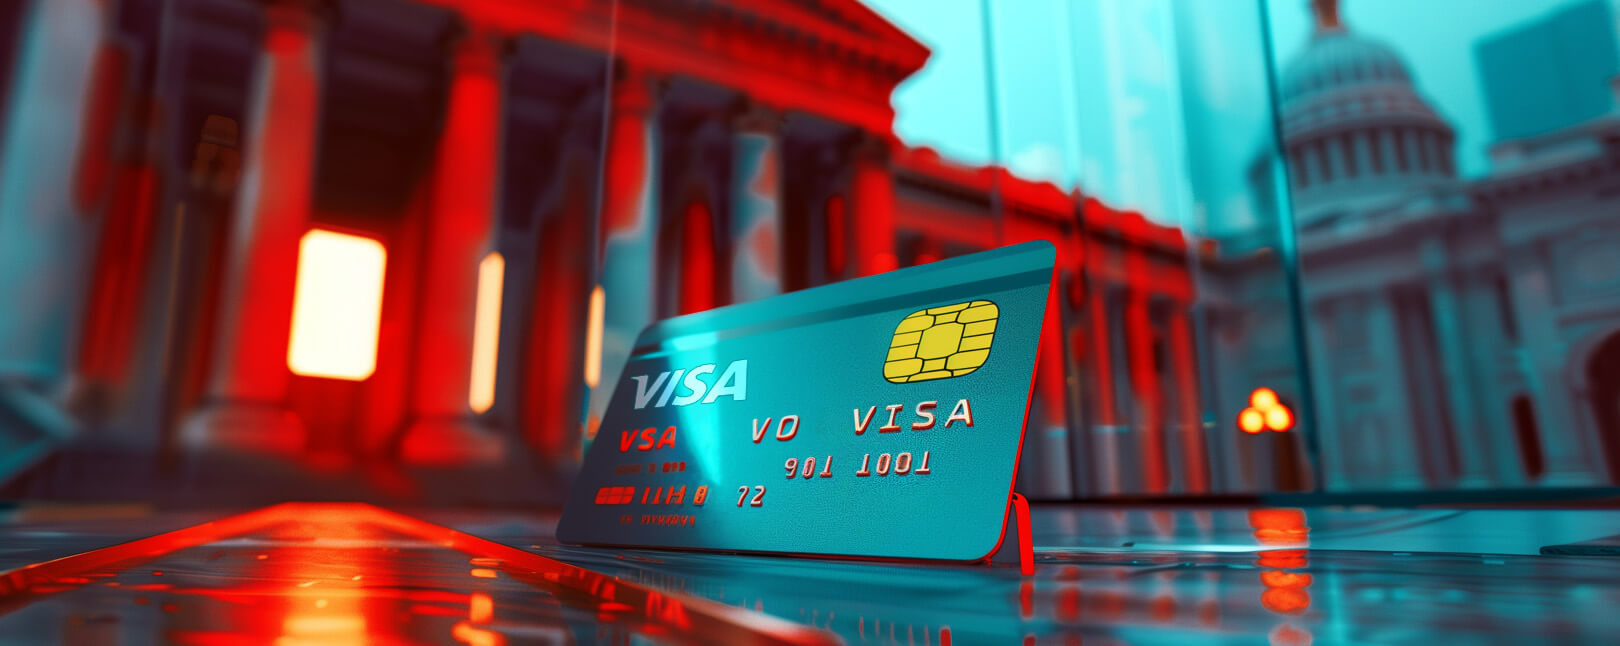 VBASS Visa BIN attribute sharing service